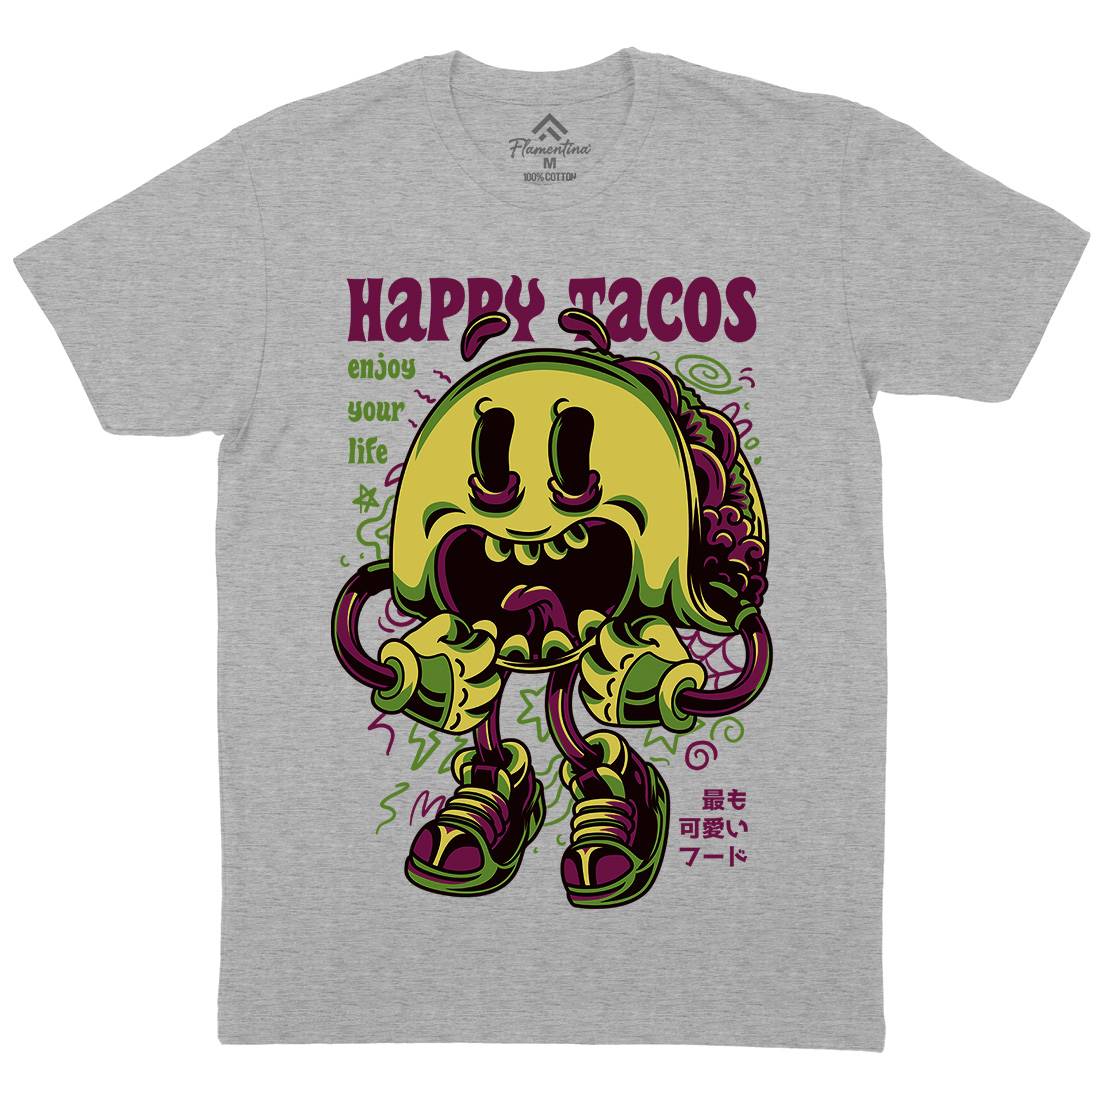 Happy Tacos Mens Crew Neck T-Shirt Food D607